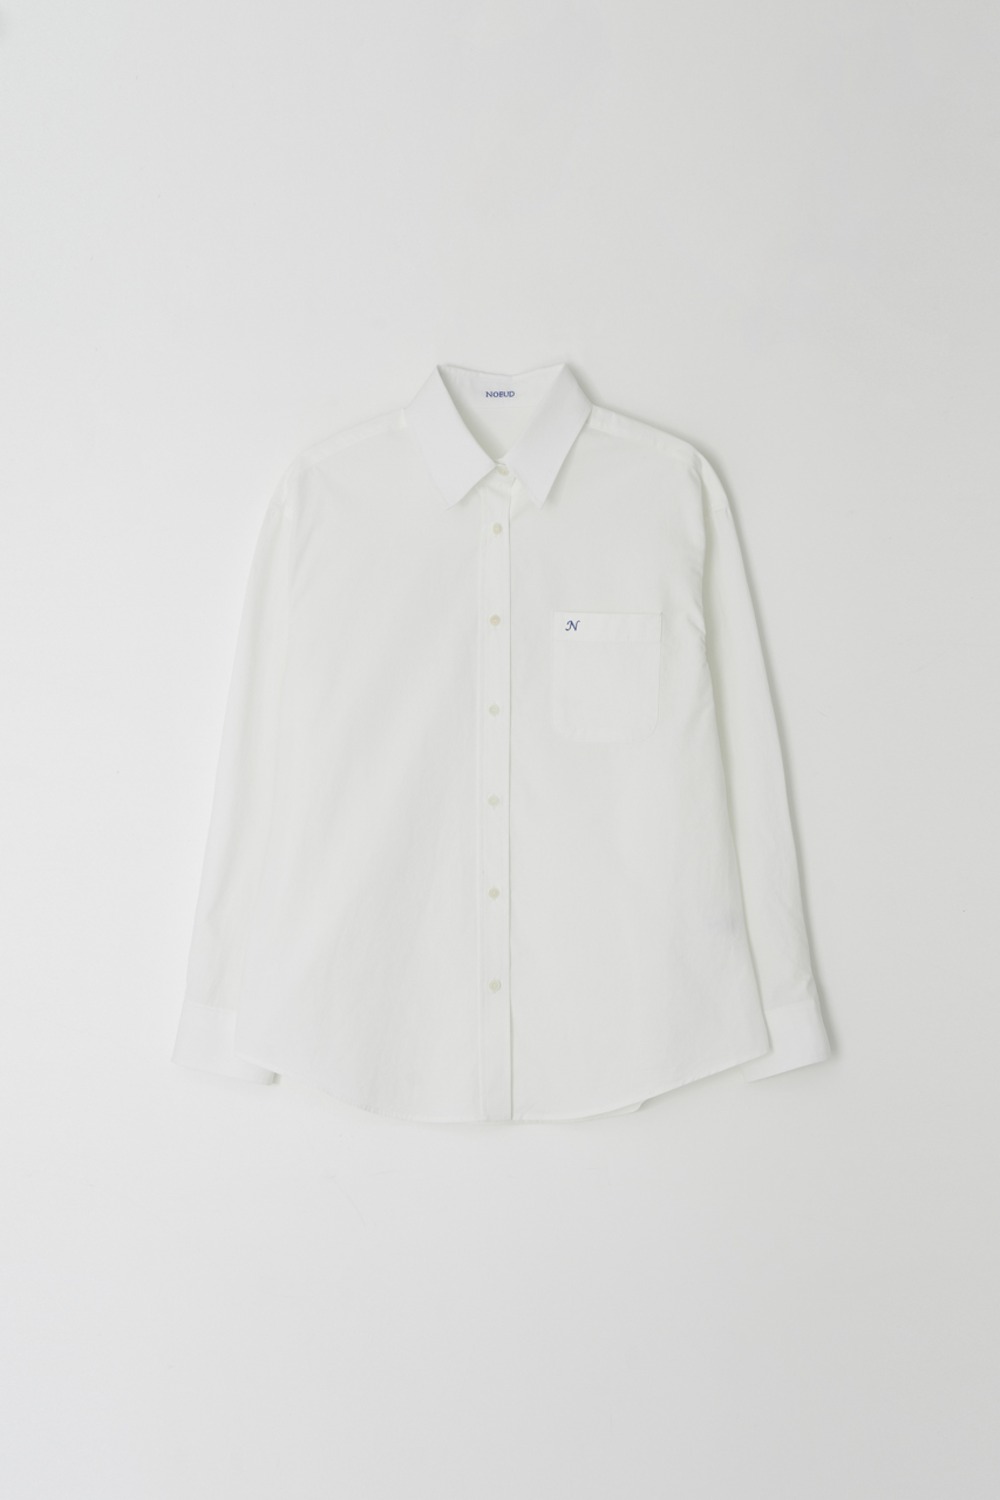 Needle cotton shirt (White)